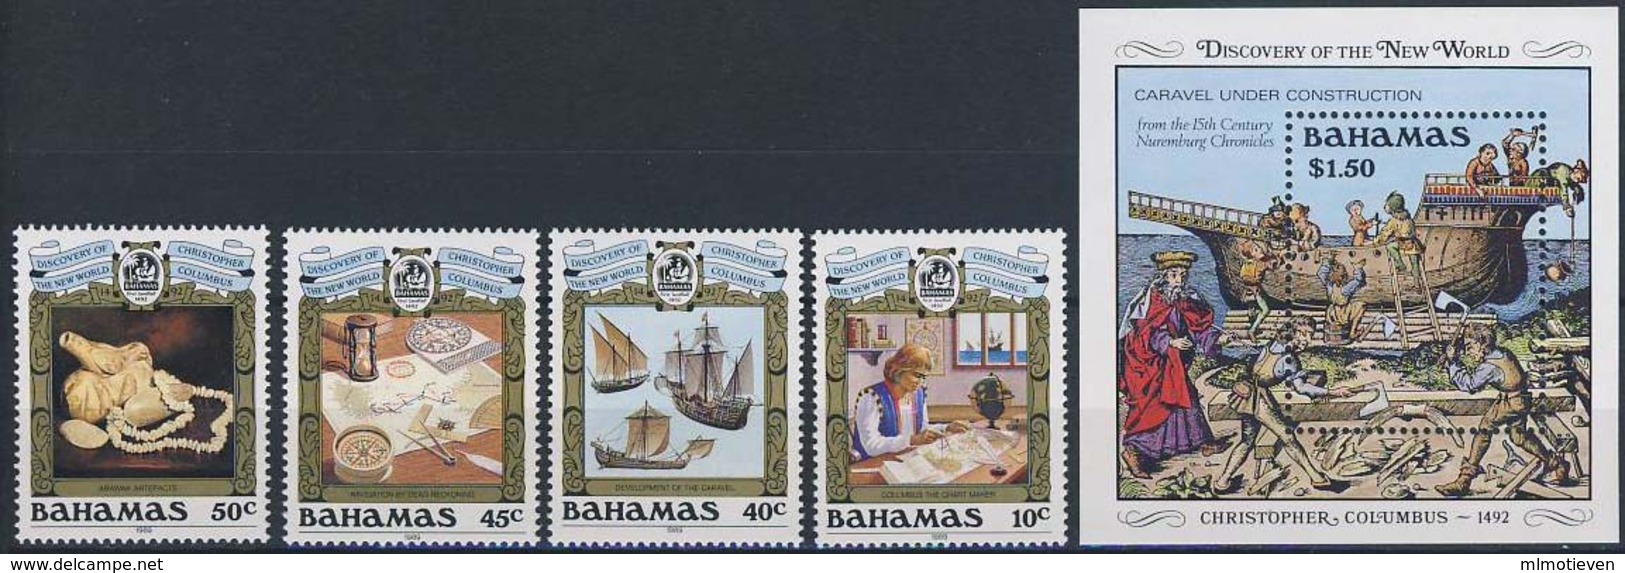 MVS-BK1-191 MINT ¤ BAHAMAS 1990 KOMPL. SET ¤ VOILIERS - ZEILSCHEPEN - SAILING SHIPS OVER THE WORLD - Maritiem